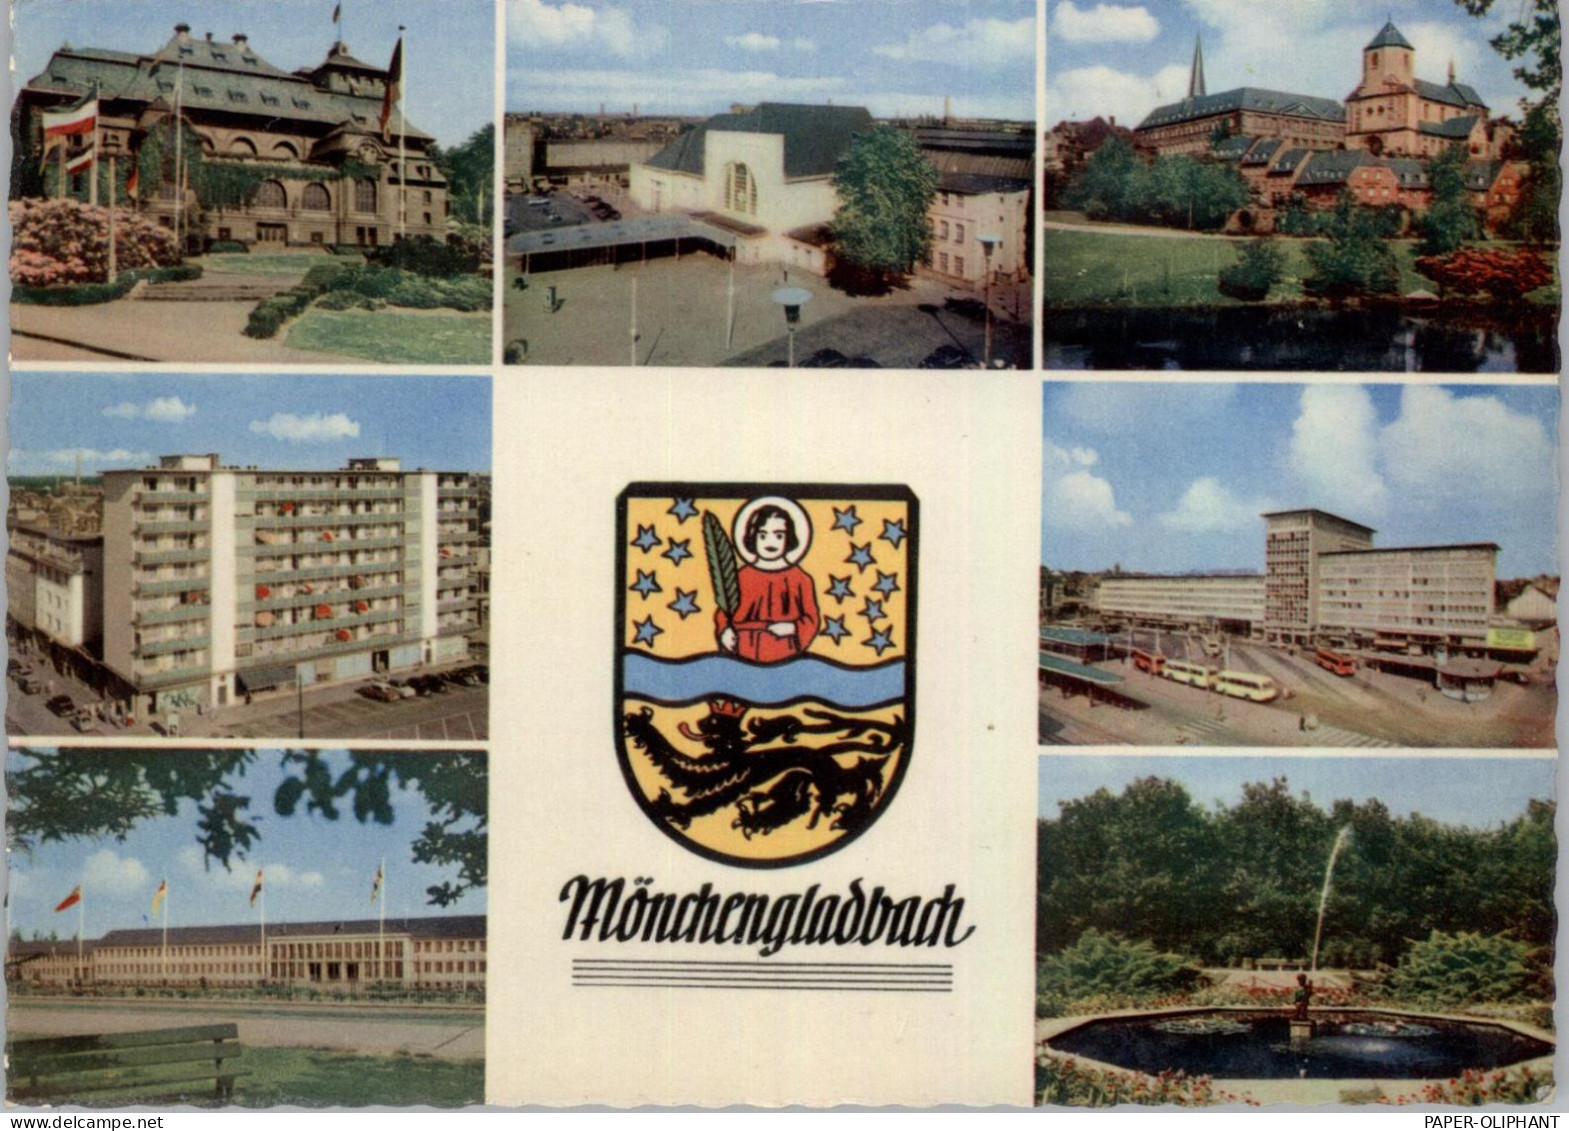 4050 MÖNCHENGLADBACH, Mehrbild-AK, Stadtwappen, 1961 - Moenchengladbach